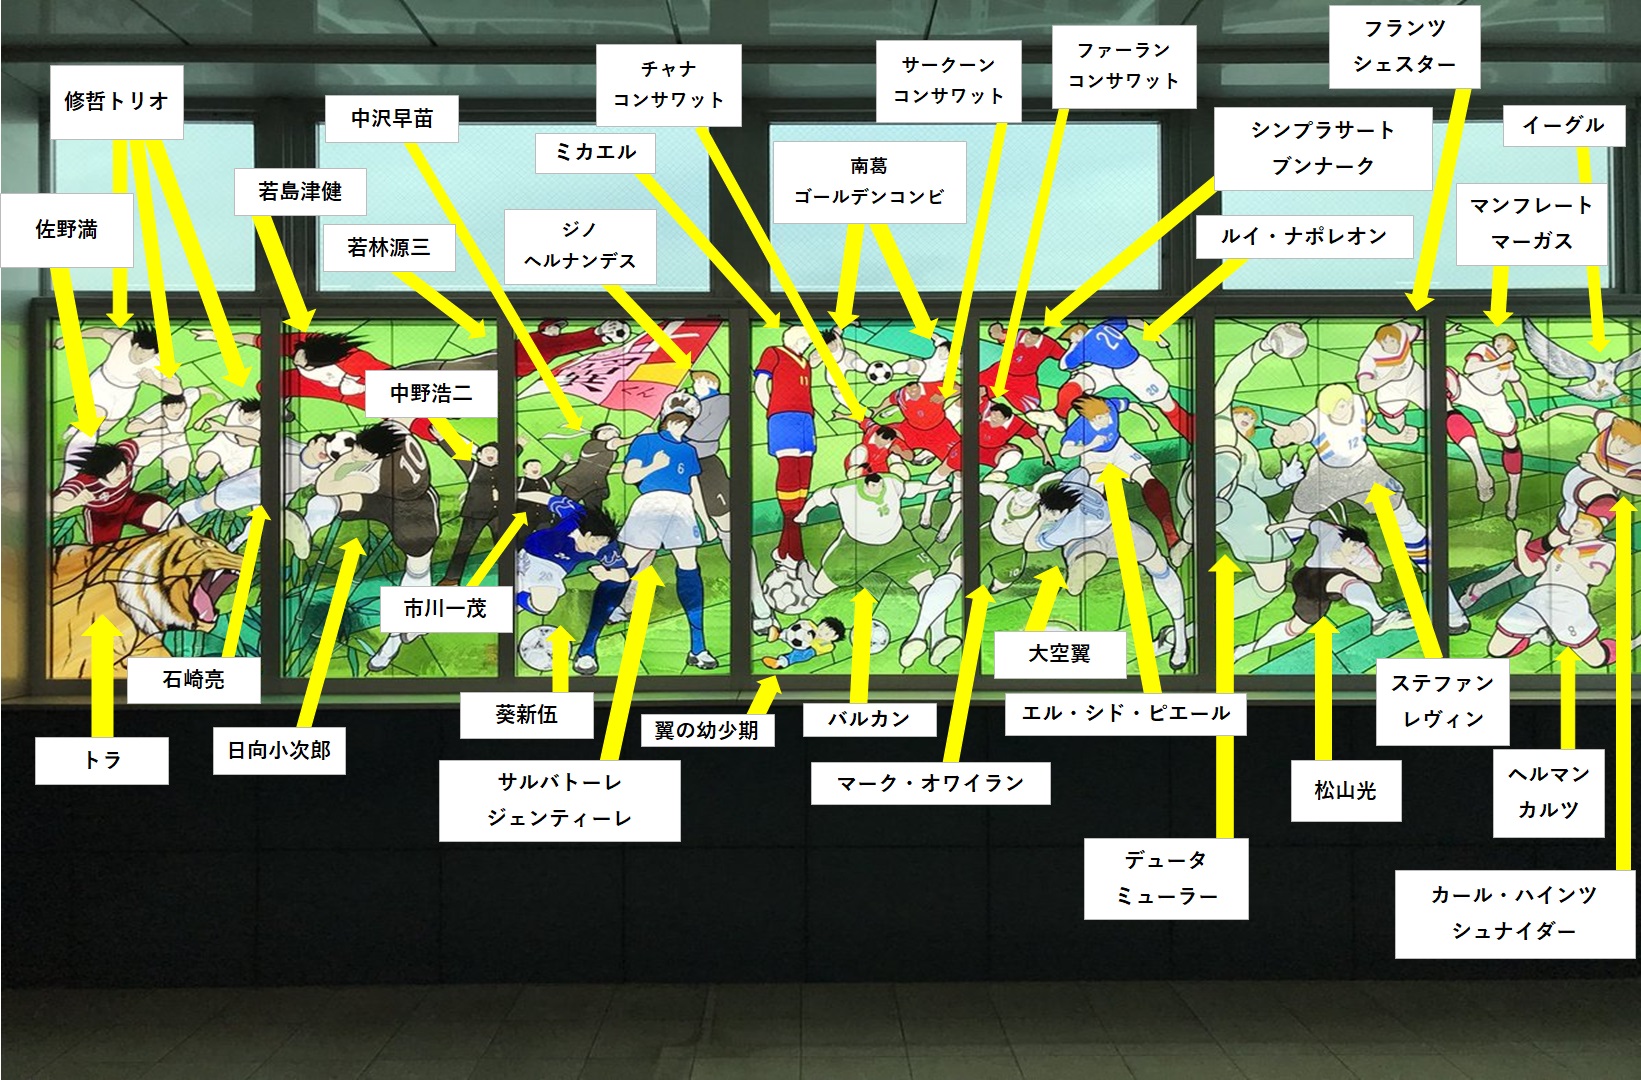 浦和美園駅のキャプテン翼ステンドグラスについて徹底調査 Camisa8のブログ